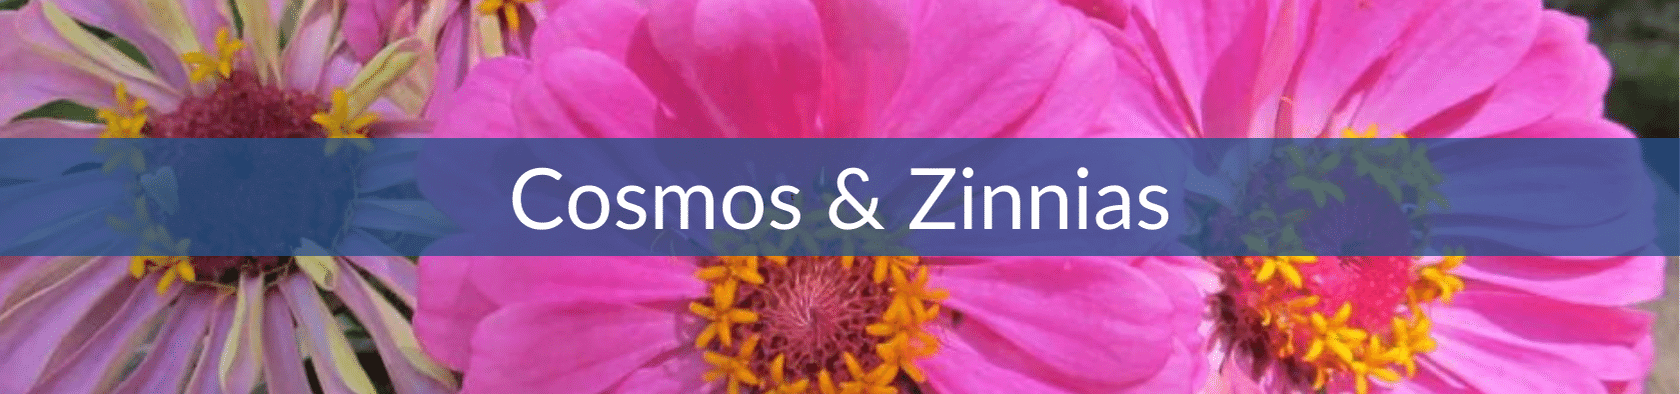 Cosmos & Zinnias (1).png__PID:9b761321-9c9b-42b1-89d6-d5707c2e9371